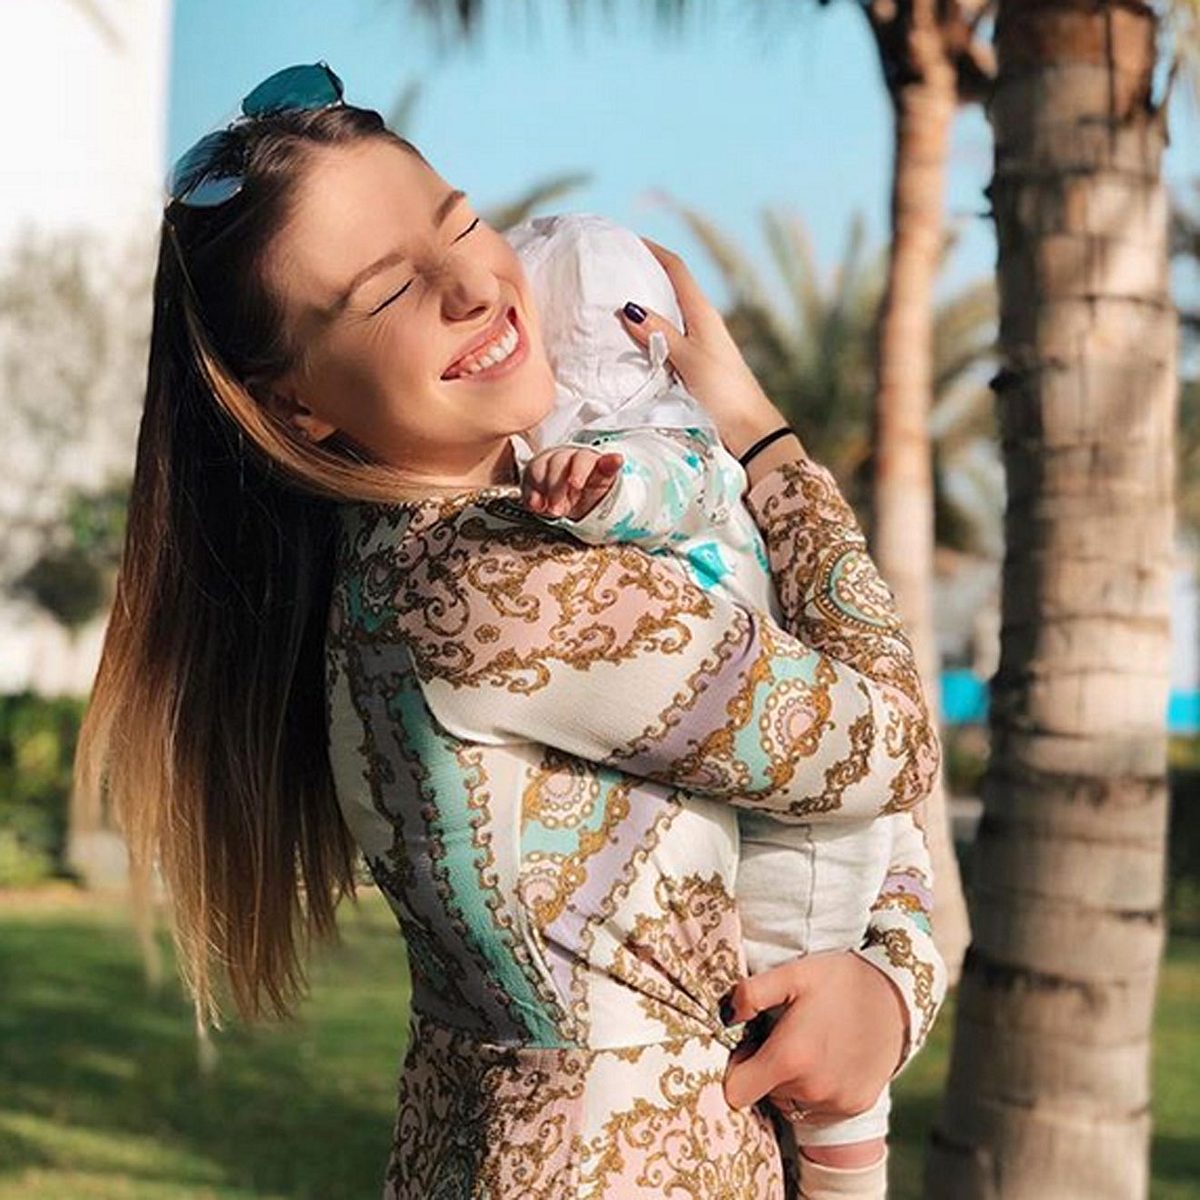 Bibis Beauty Palace liebt ihr Baby über alles